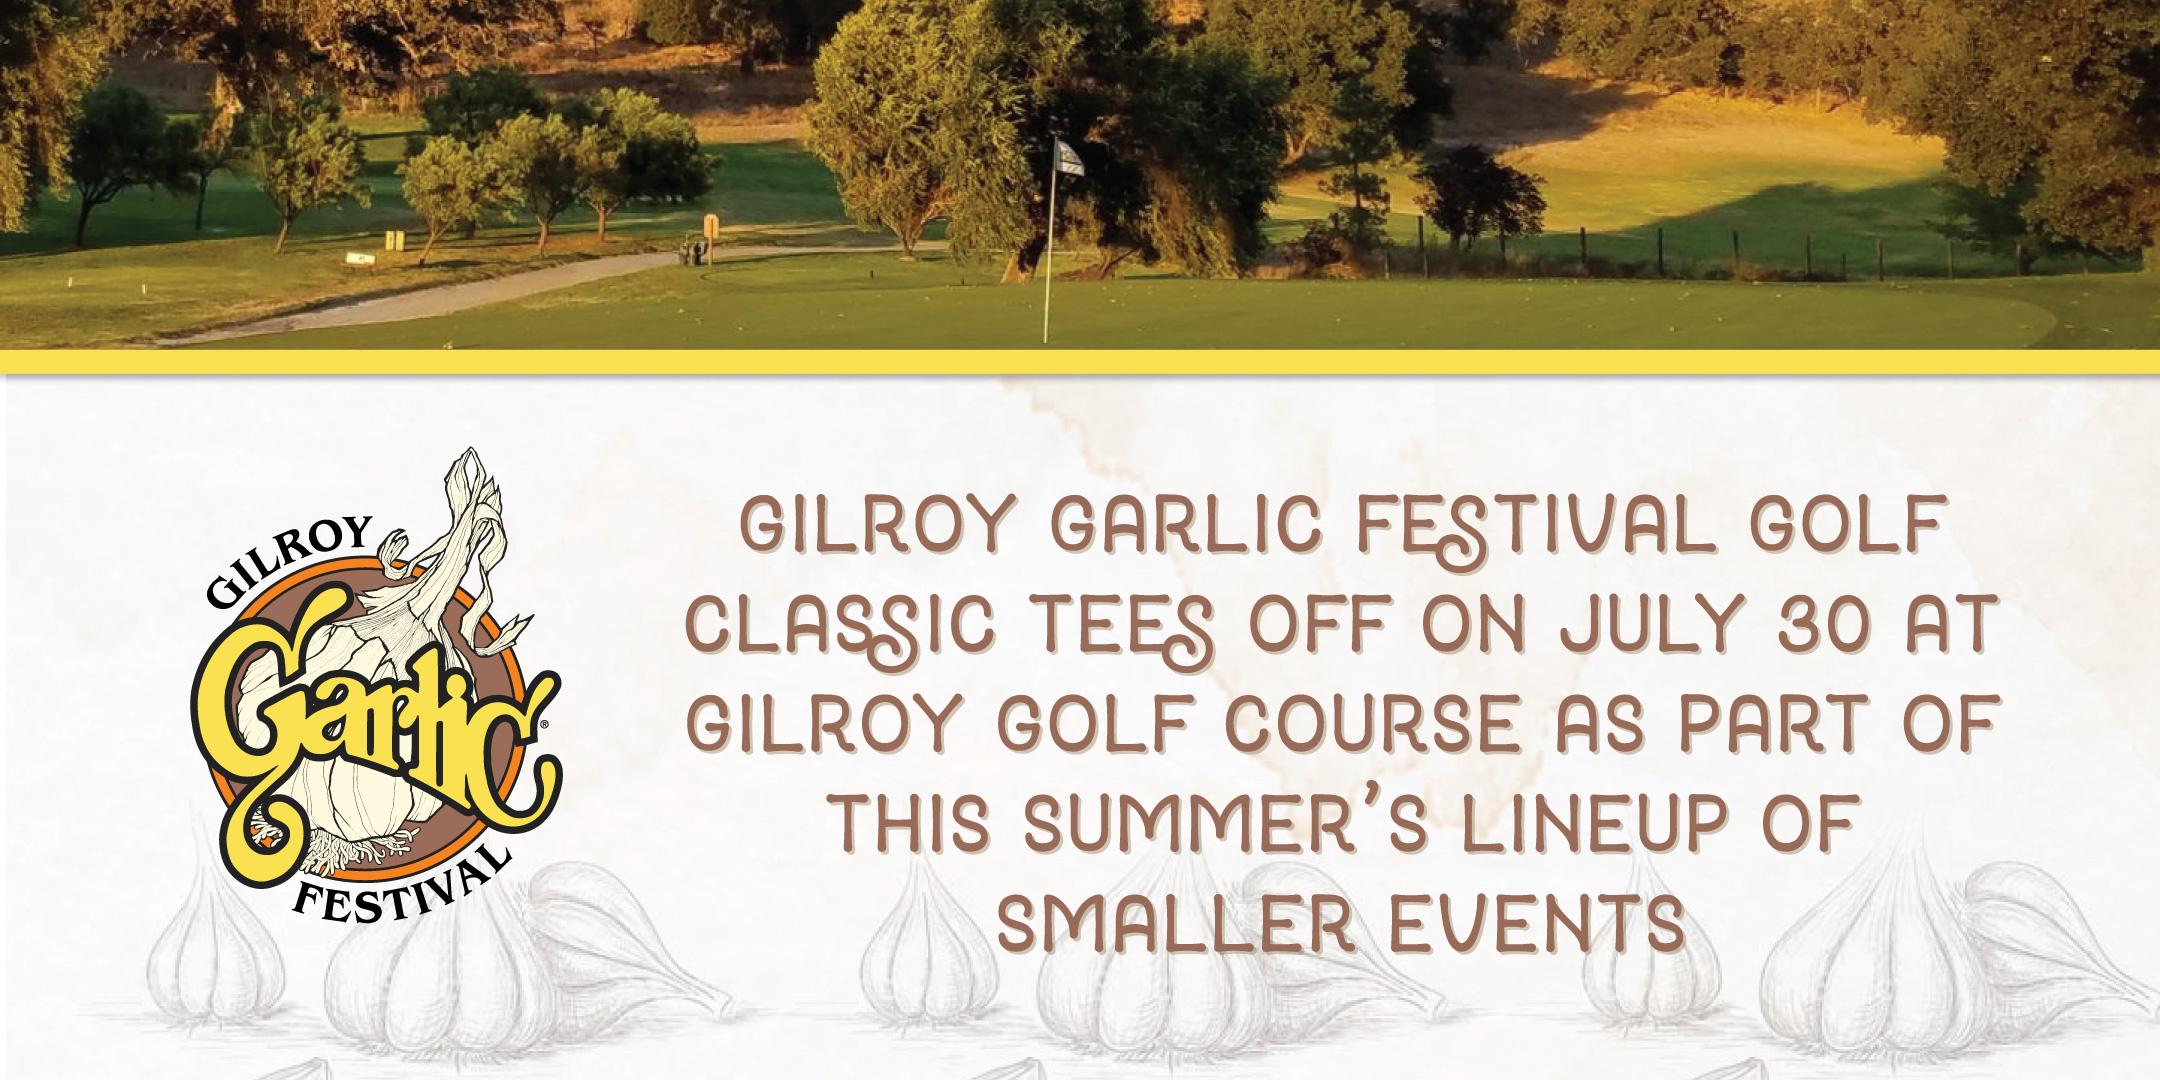 Gilroy Garlic Festival Golf Classic